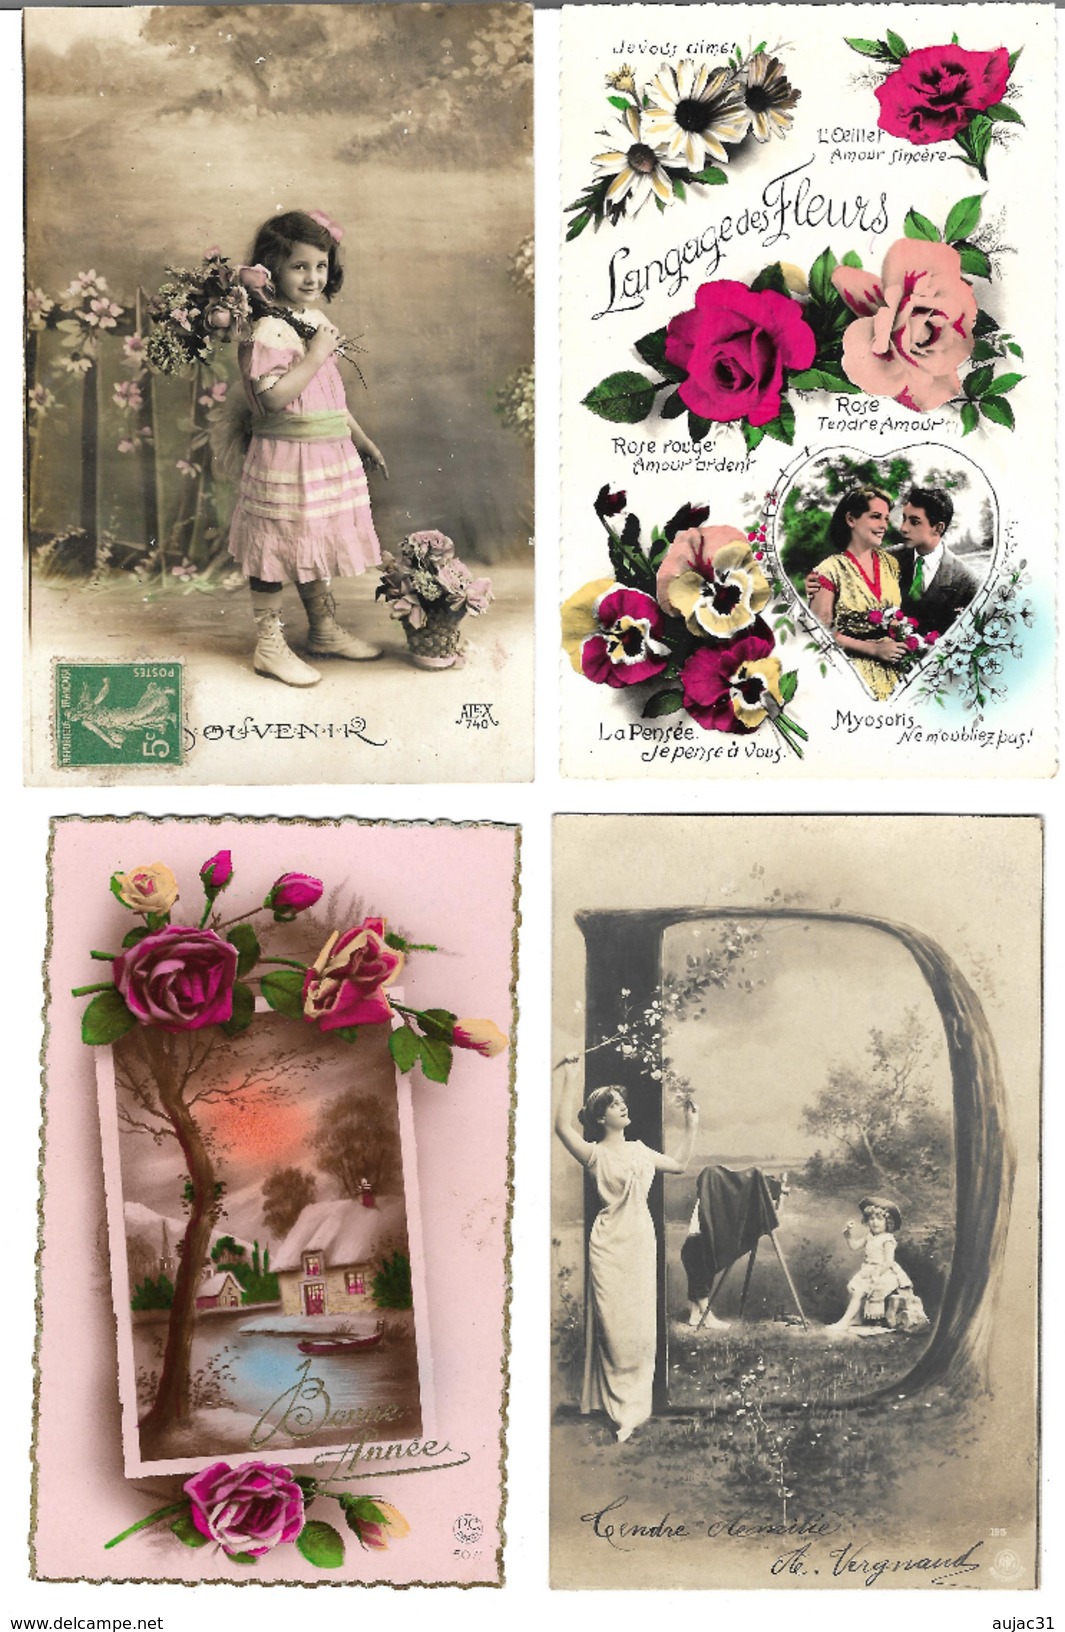 Fantaisies divers - Lot de 100 cartes - 1er avril - Noël - Enfants - Femmes - Fleurs - Couples - Pâques - etc